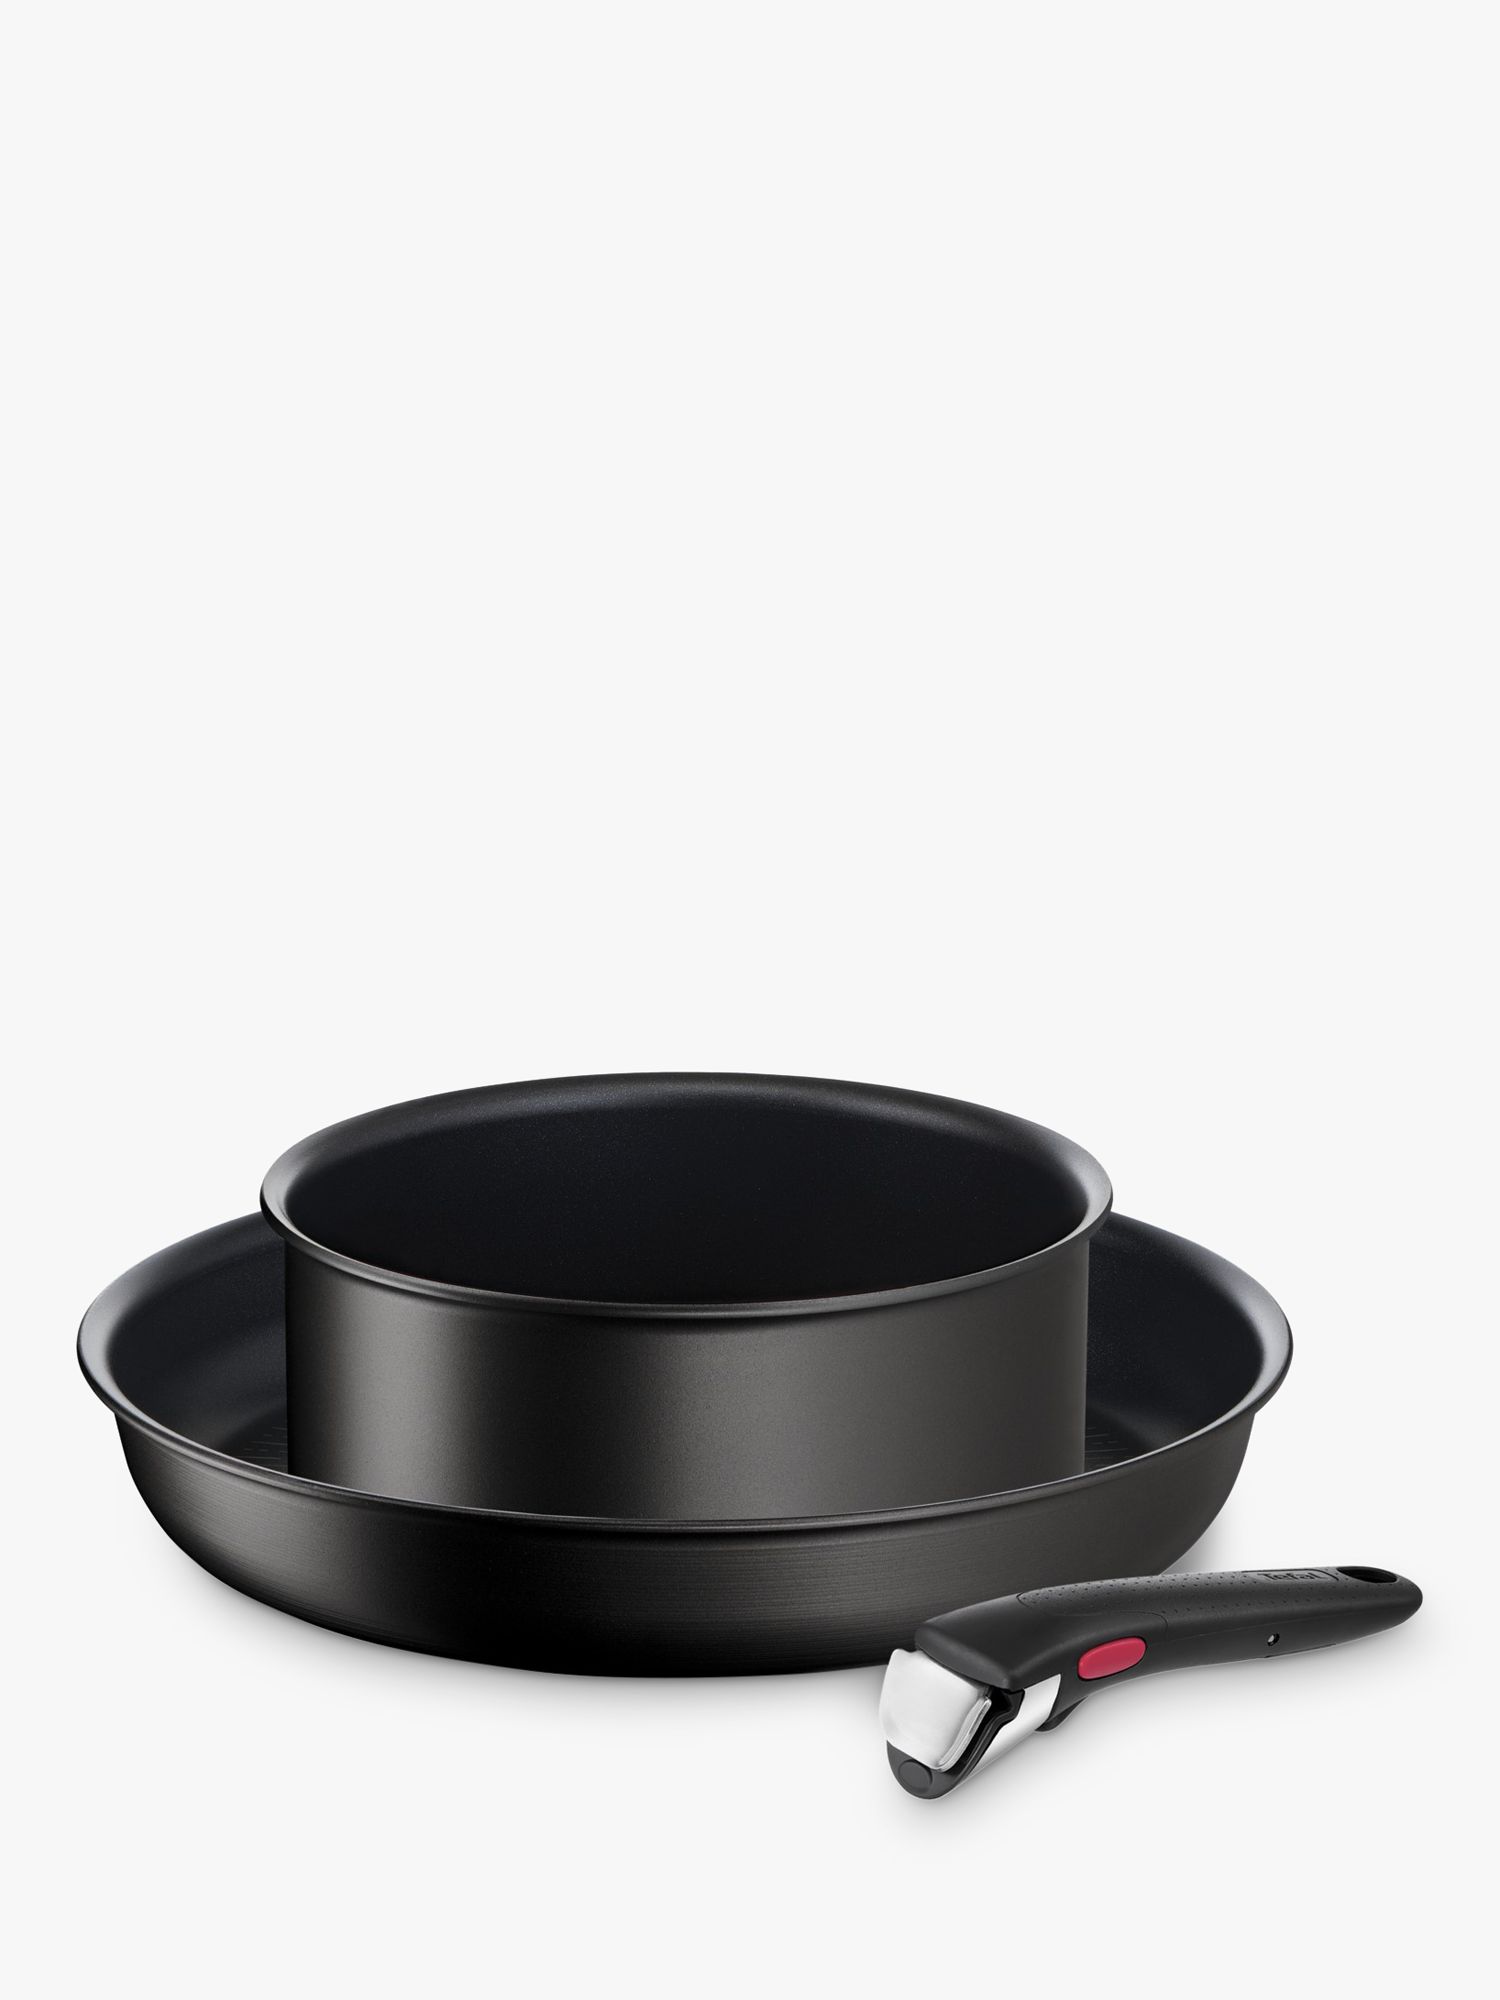  Tefal Cookware Set, Saucepans, Induction, Black, 3 Pc Set :  Home & Kitchen